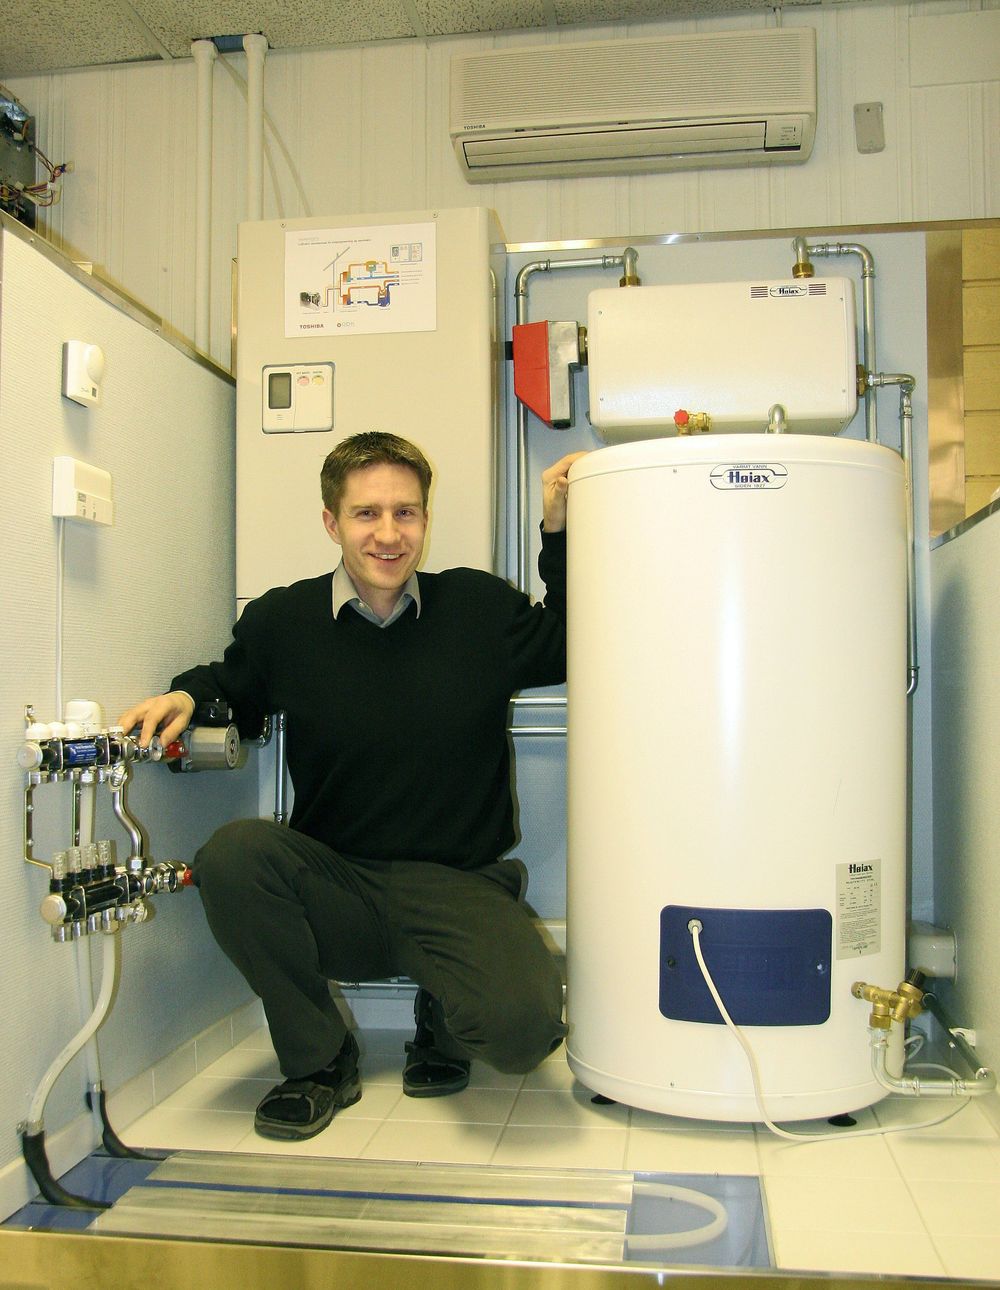 SENTRALANLEGG:Sivilingeniør i kuldeteknikk, Morten Solsem i selskapet ABK har vært med å utvikle en ny type varmepumpeanlegg som bruker utedelen fra en luft-luft-varmepumpe, men som leverer varmt vann til boliger med vannbåren varme. Dette anlegget kan også levere varme til tappevann.